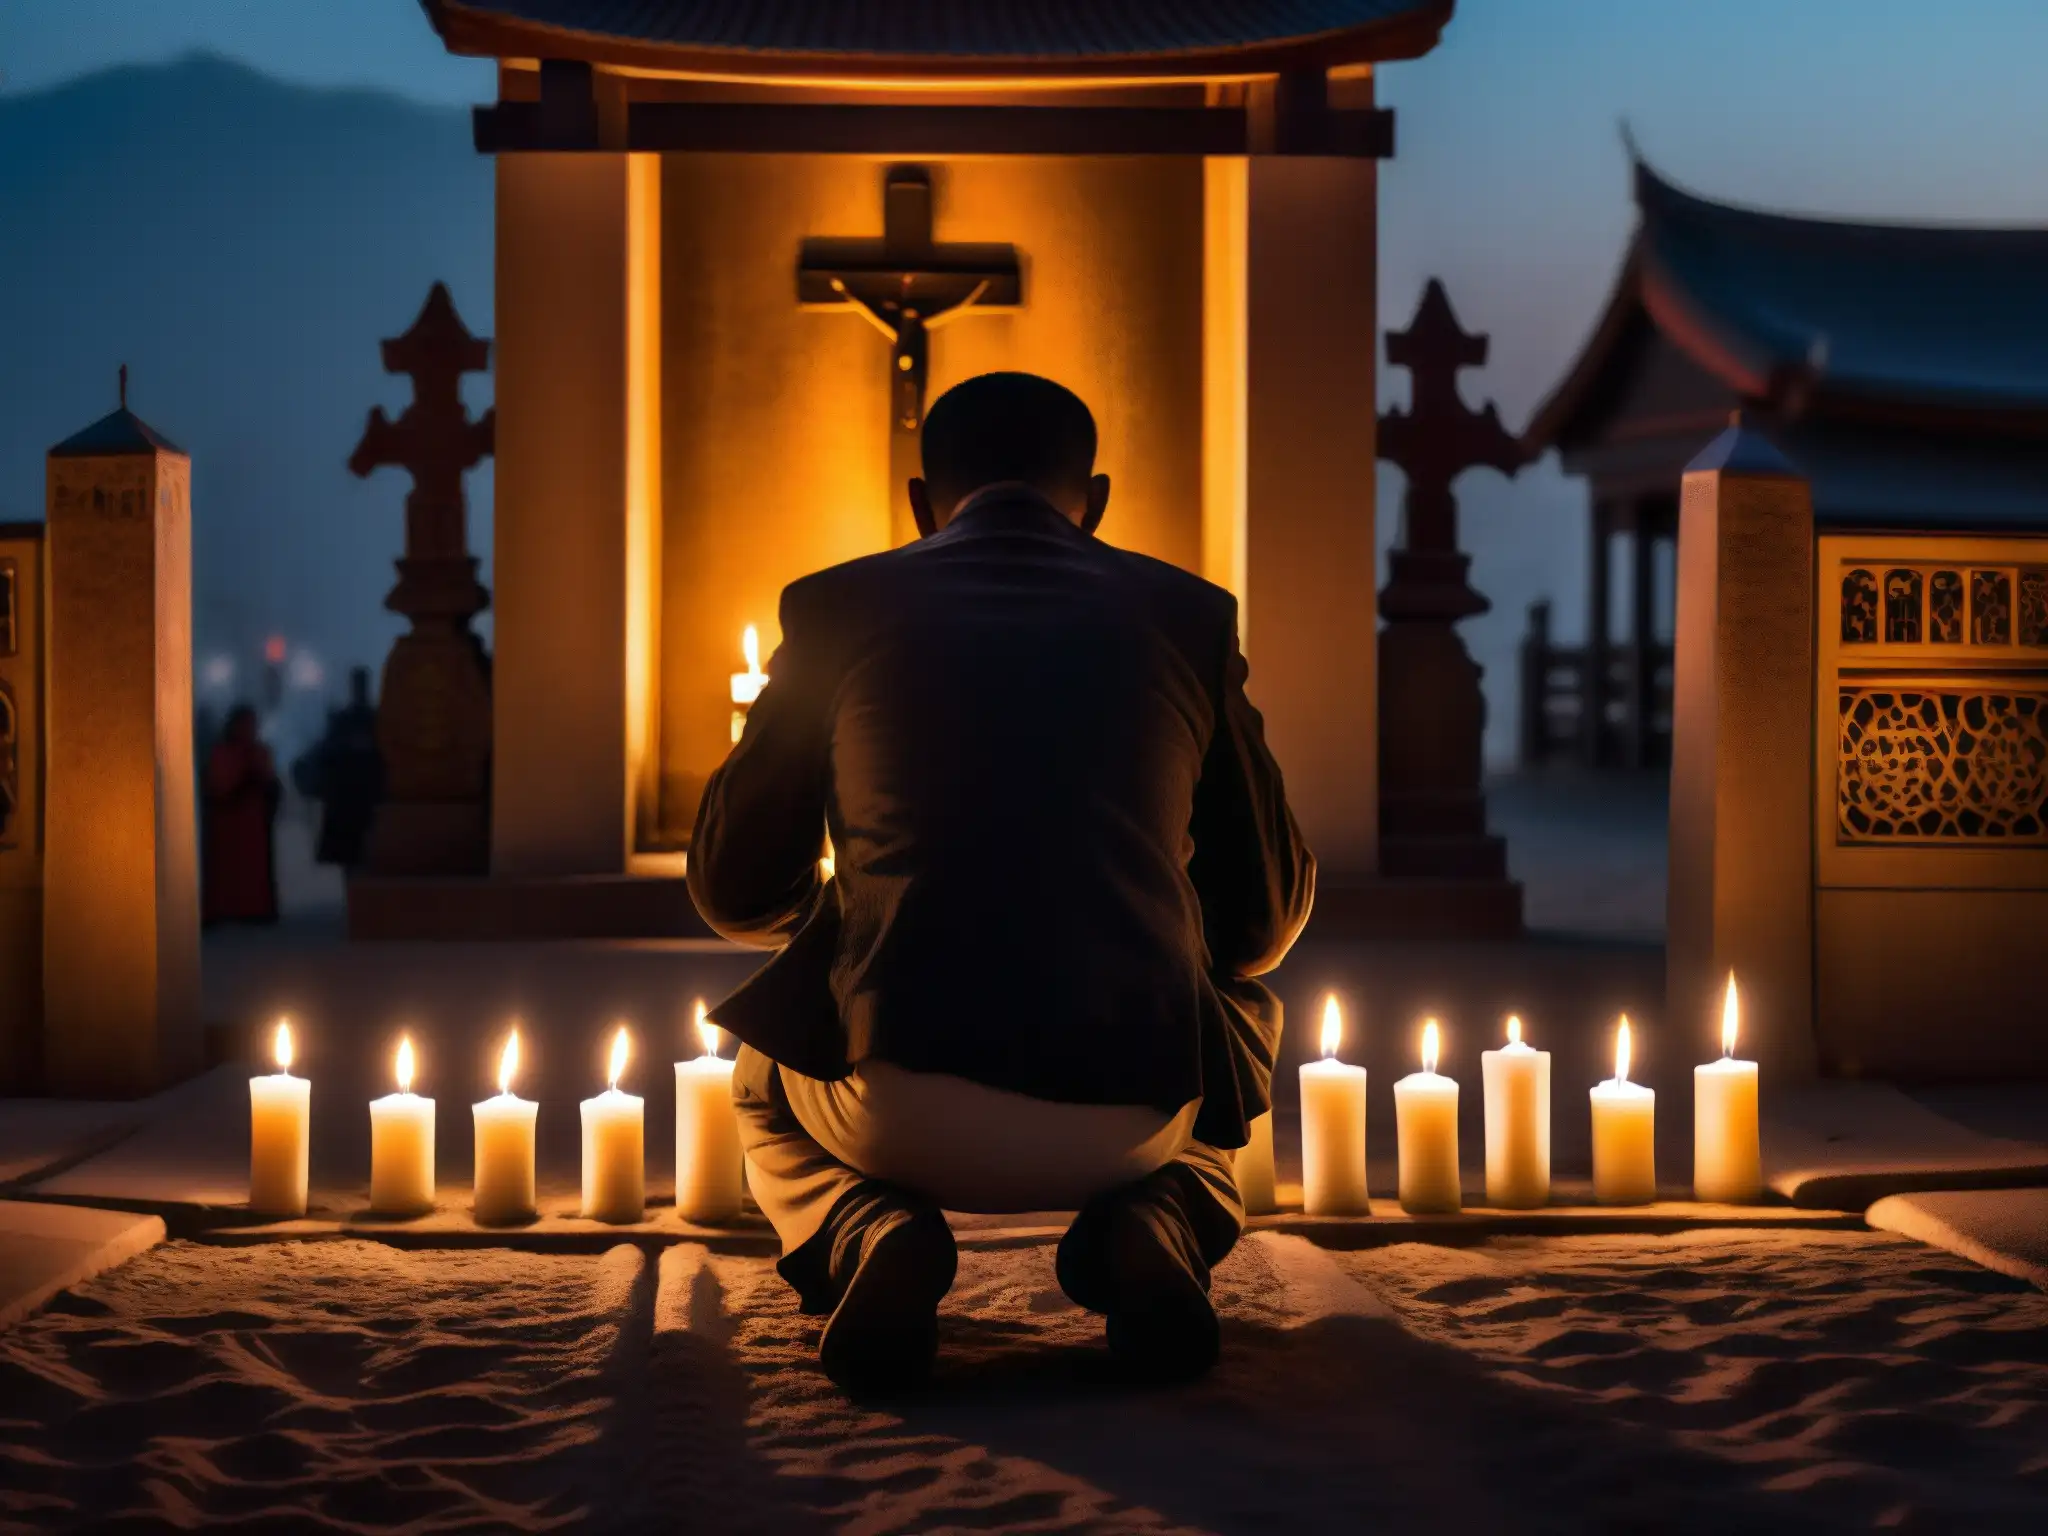 Un misterioso devoto se arrodilla ante un santuario urbano, iluminado por velas